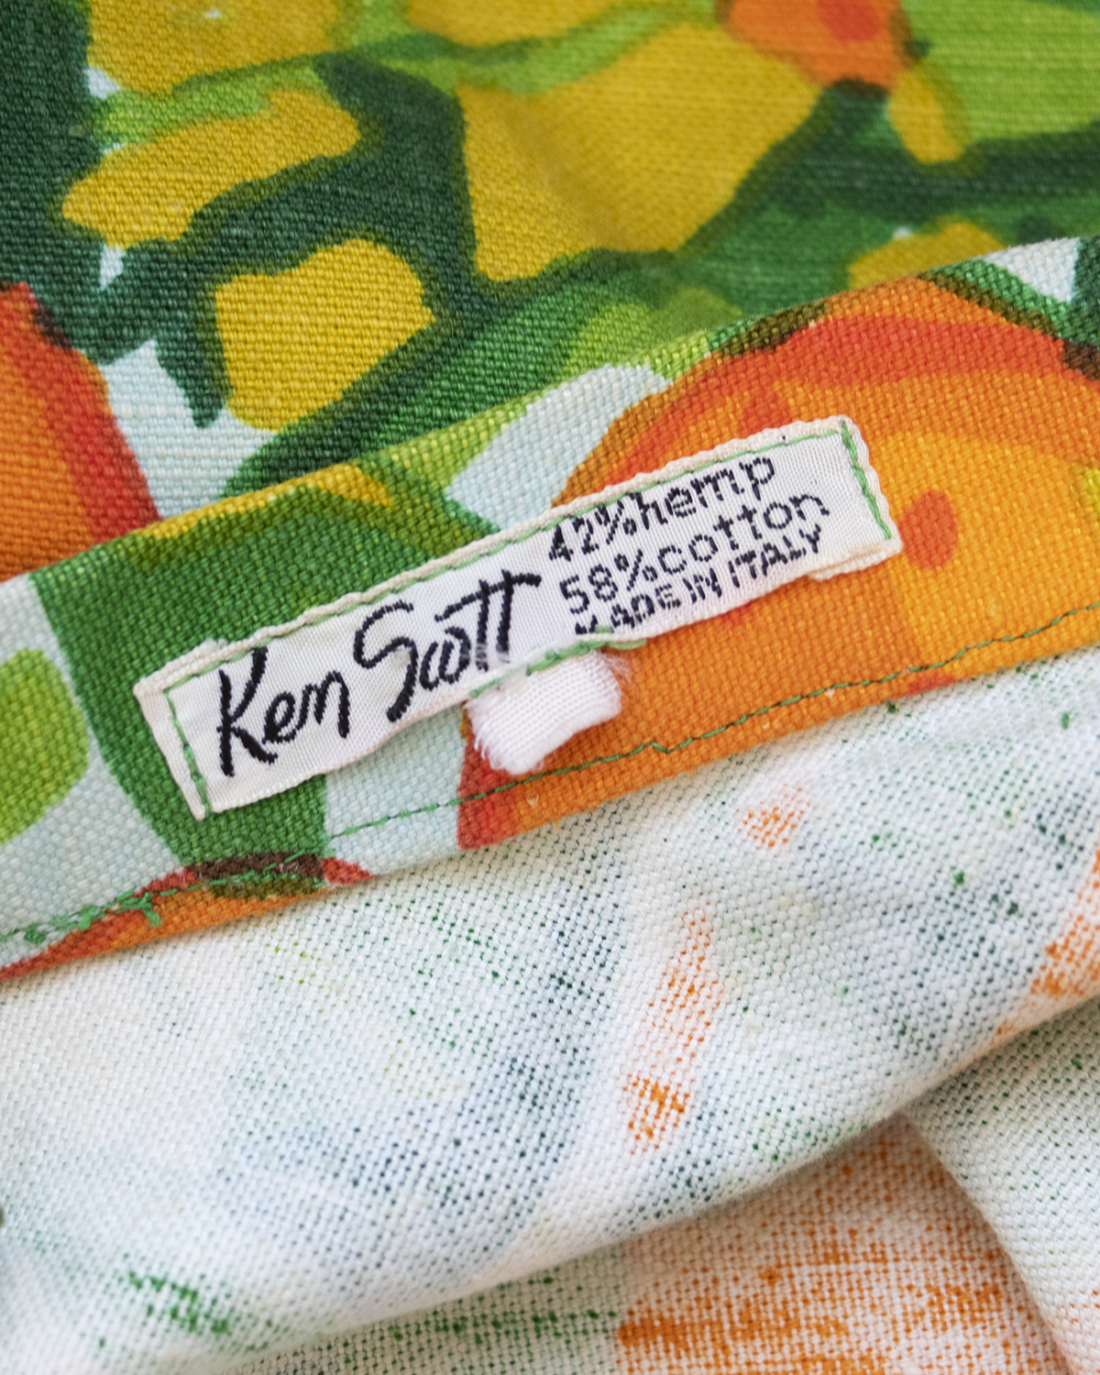 Ken Scott - Suit from 1985